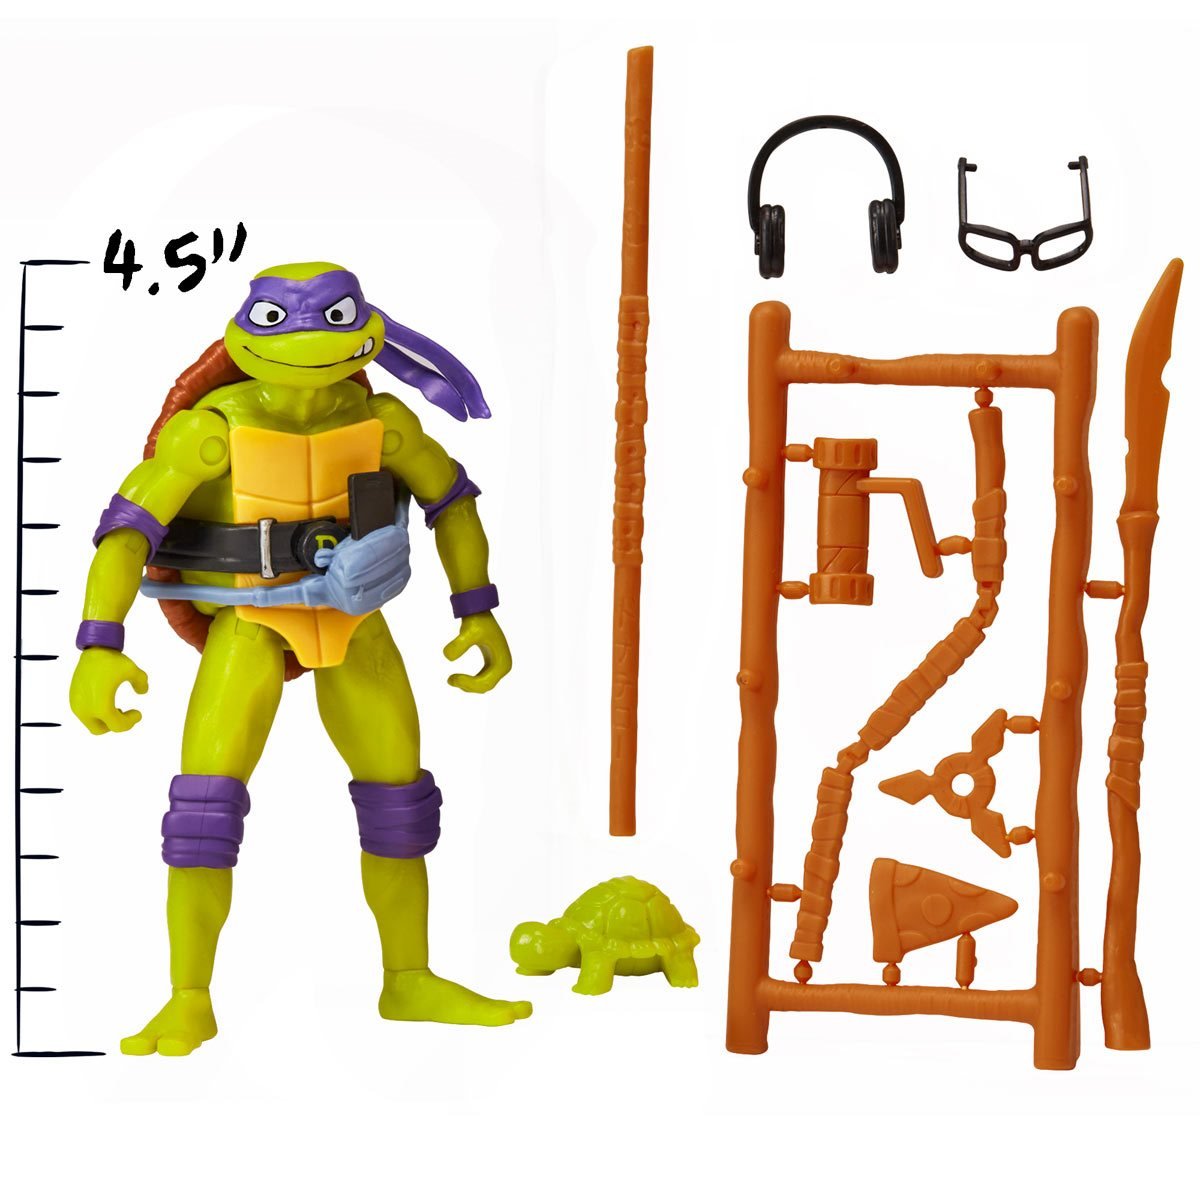 PLAYMATES Teenage Mutant Ninja Turtles: Mutant Mayhem Movie Turtles Donatello Basic Figure